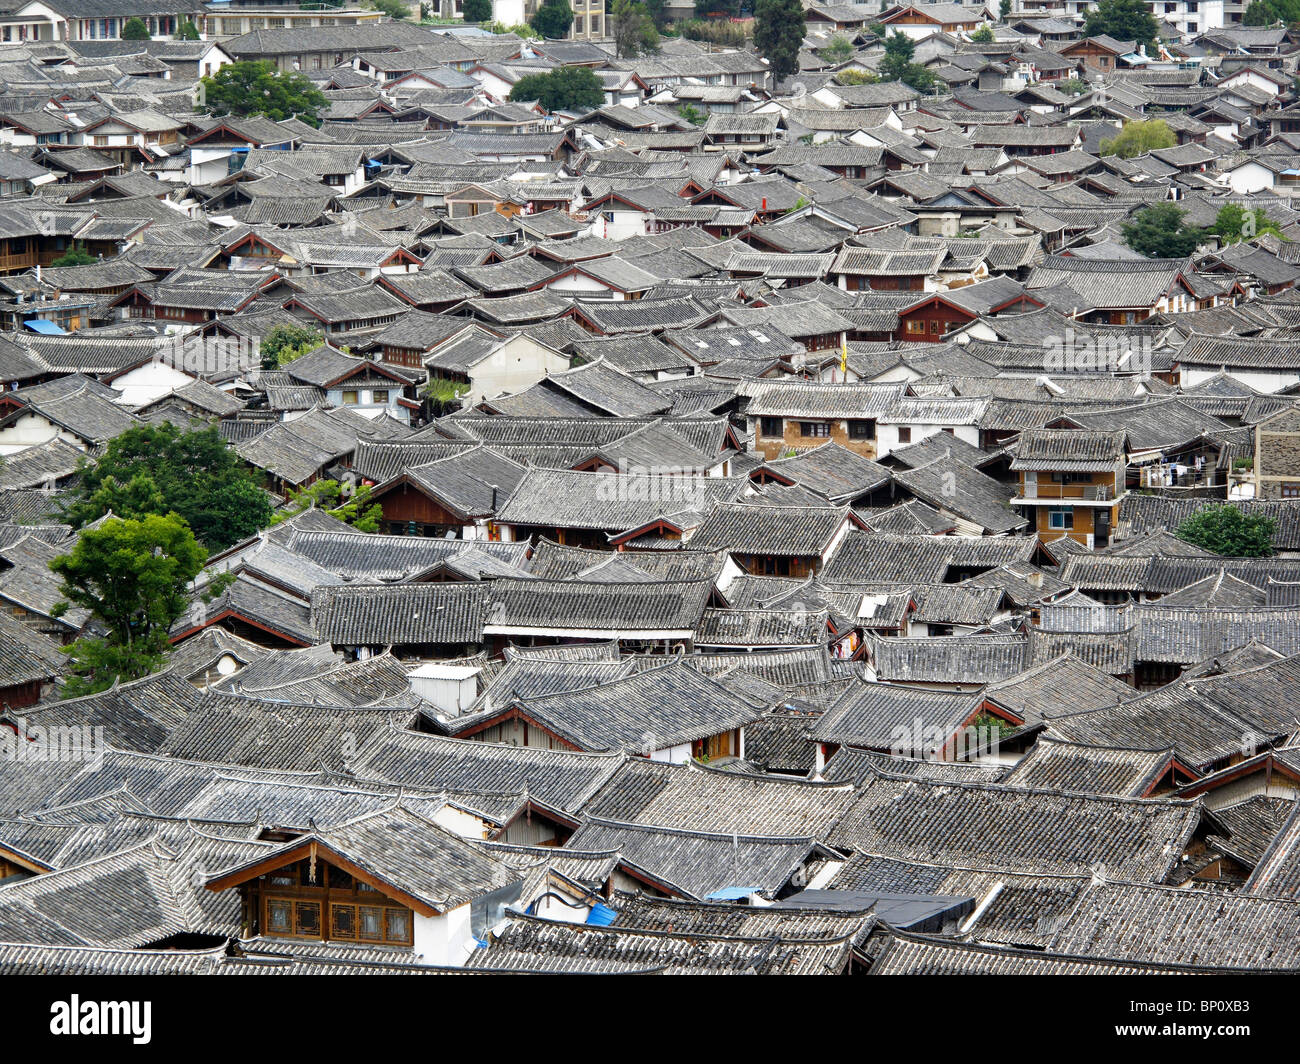 China, Yunnan province, Lijiang, general view Stock Photo